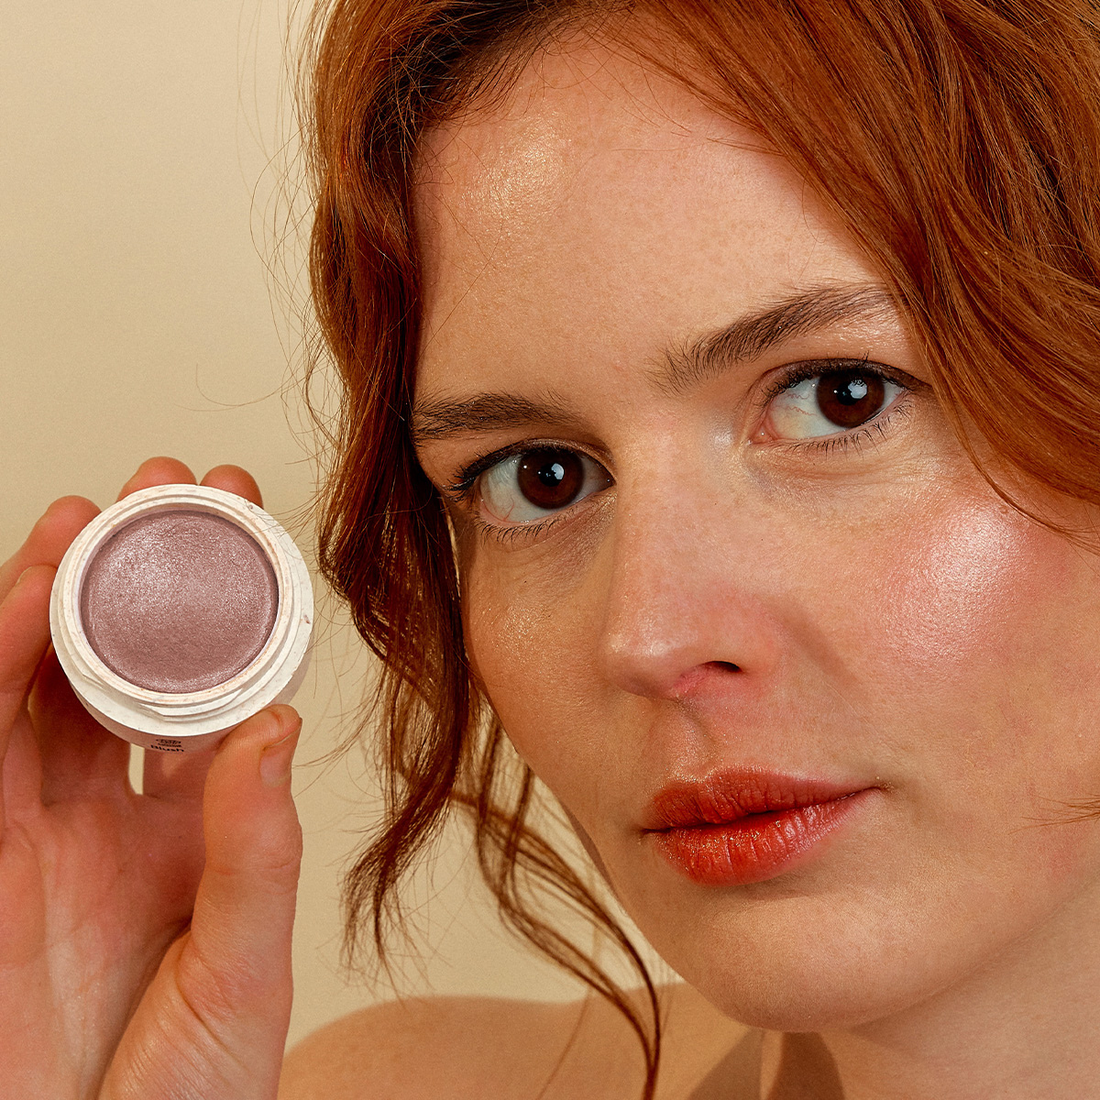 Une expérience sensorielle avec la marque bretonne Eclo : La marque de cosmétiques qui sublime naturellement la peau !